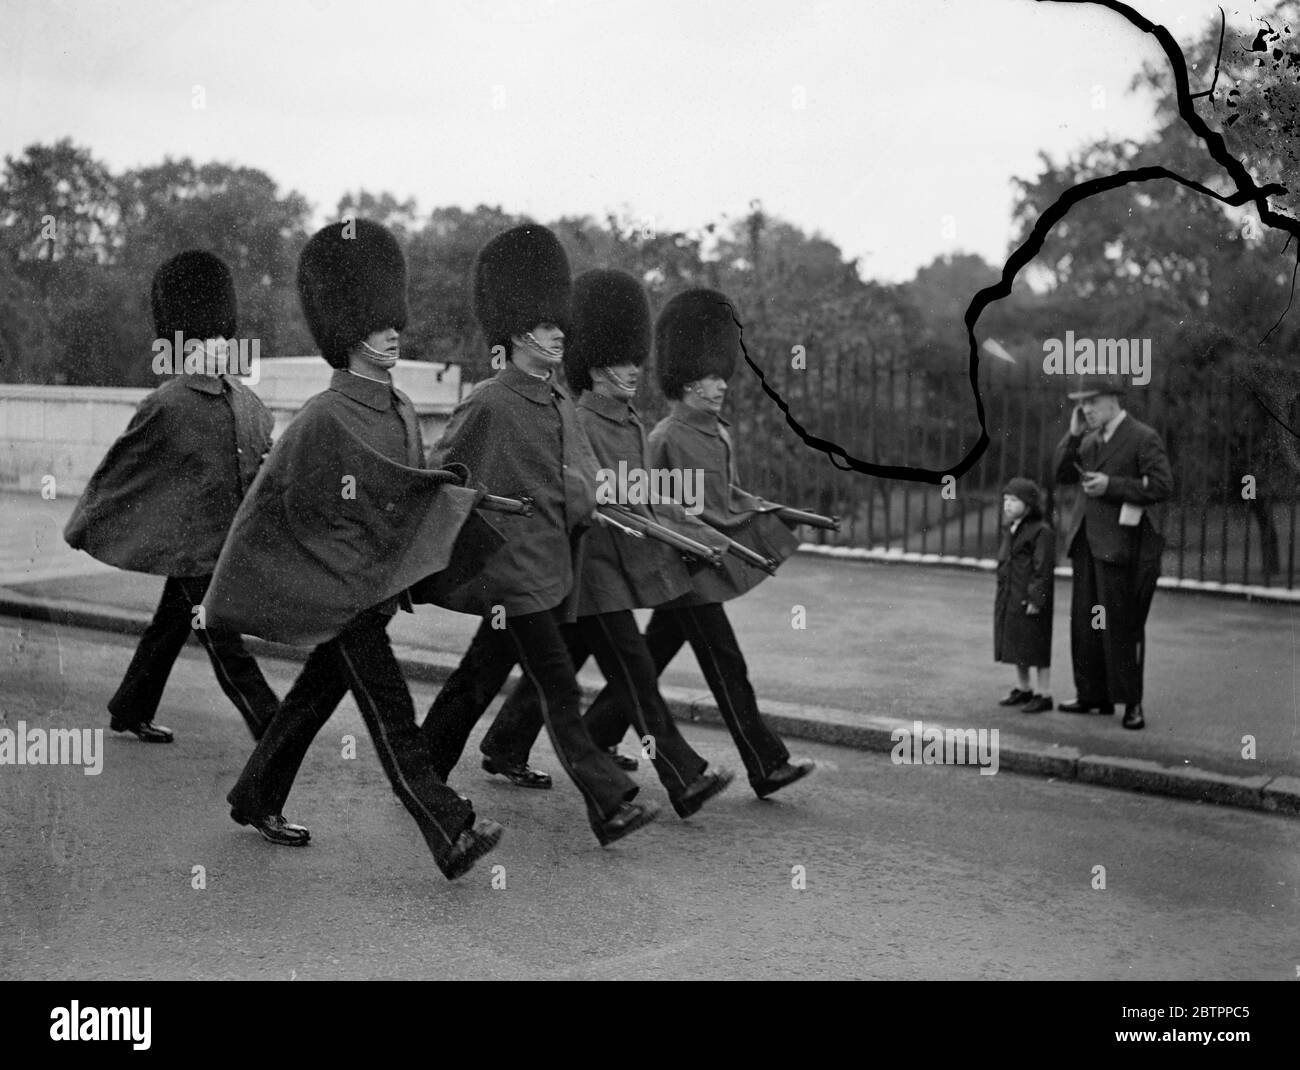 Garder les bras au sec. Les gardes portant leurs capes, ce qui signifie que le temps est « nul à bon » à Londres lorsqu'ils ont marché dans le parc St Jame sur leur chemin vers les casernes de Wellington aujourd'hui (dimanche). 10 juillet 1938 Banque D'Images